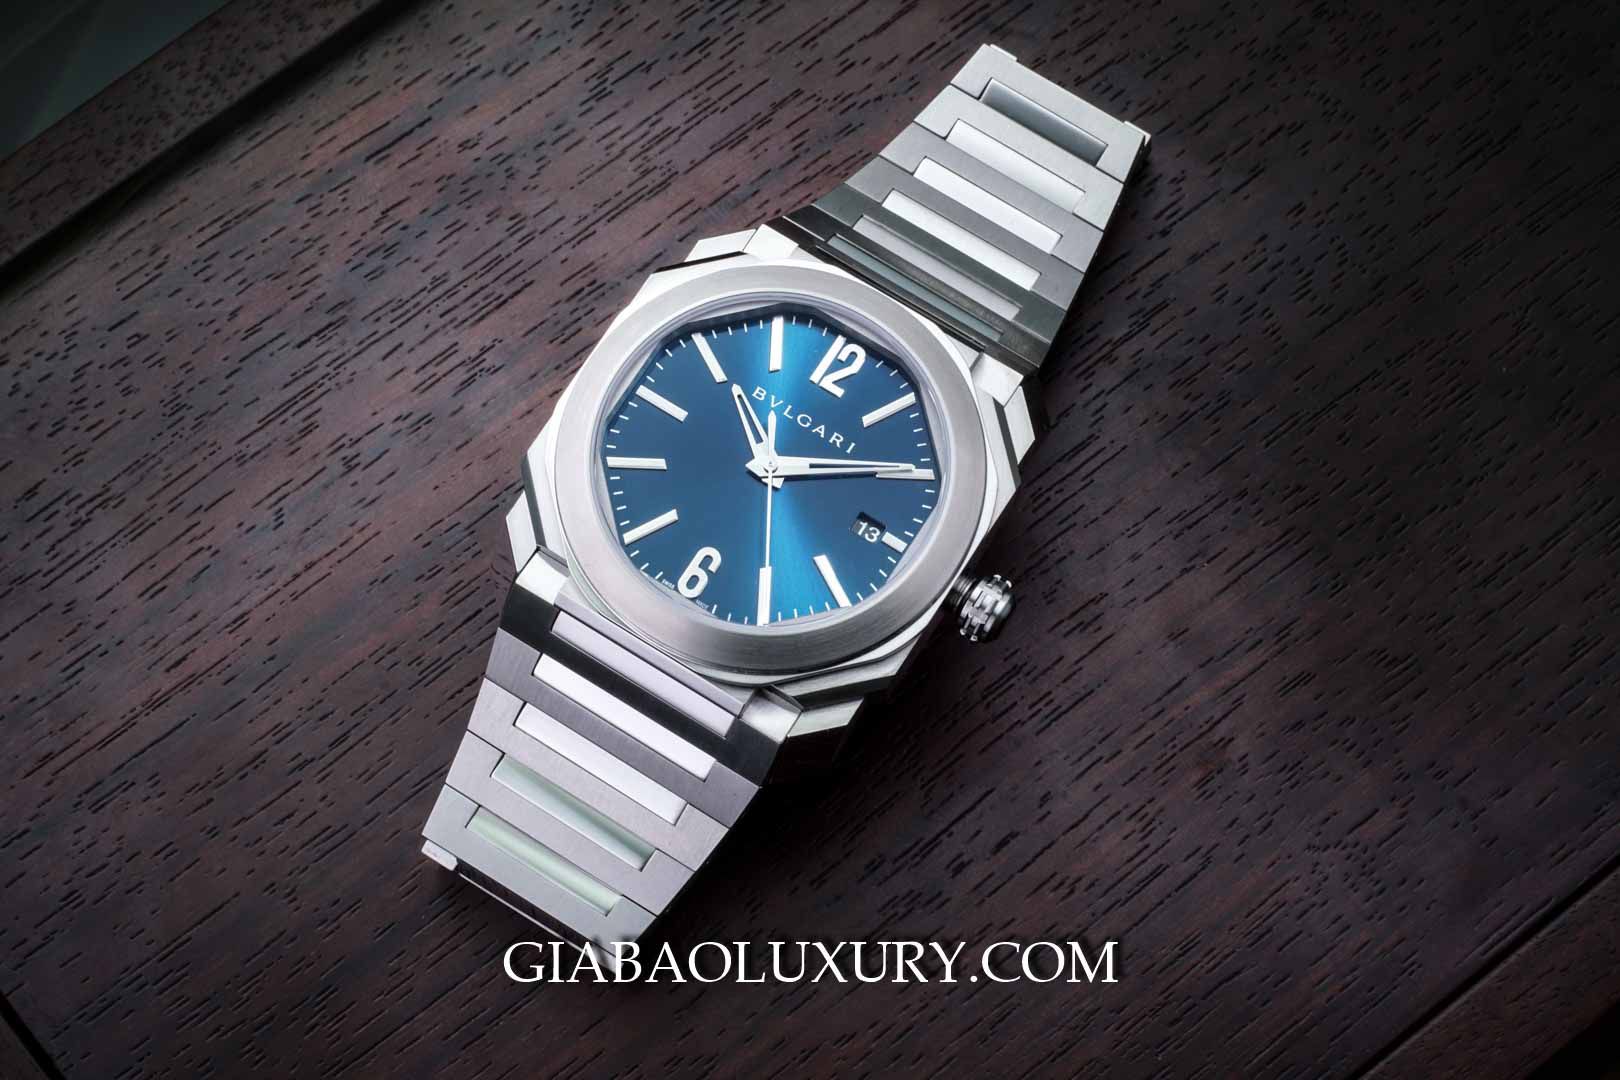 Thu mua đồng hồ Bvlgari tại cửa hàng Gia Bảo Luxury